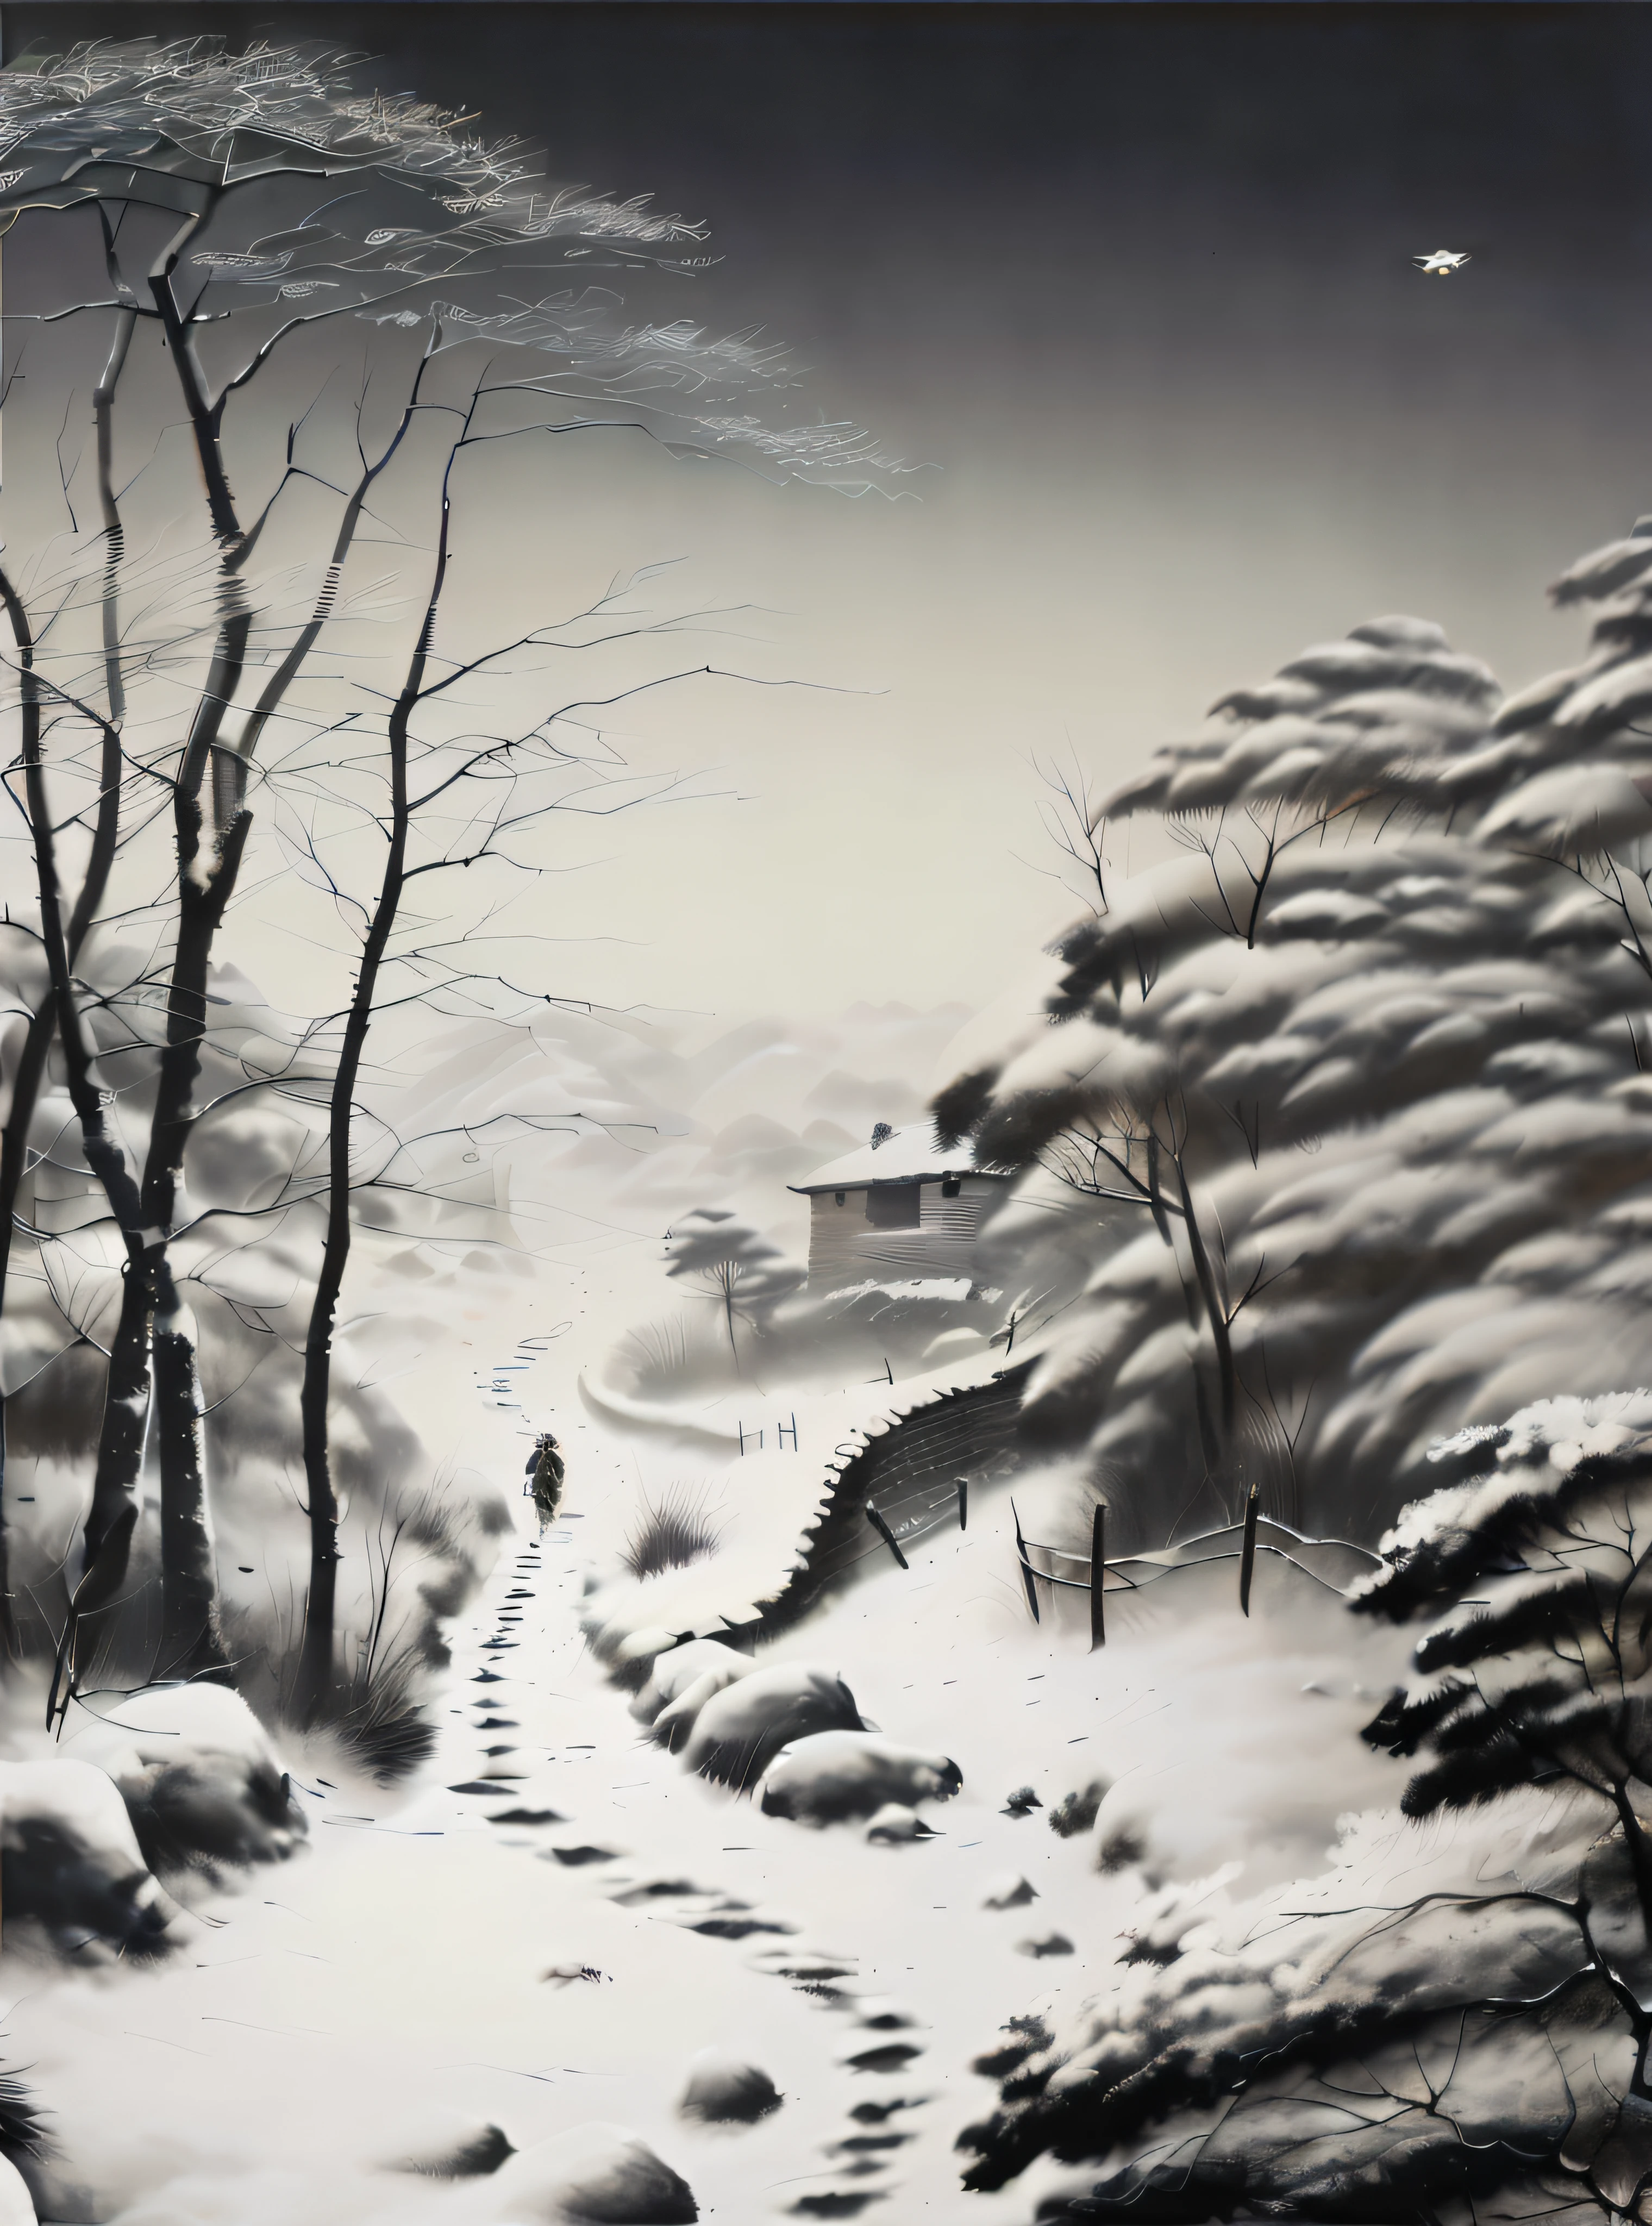 รูปภาพของอัลฟาร์ด，เดินคนเดียวบนถนนที่เต็มไปด้วยหิมะ, แรงบันดาลใจจากฟรานซ์ เซดลาเซค, ผู้เขียน：เสิ่น ซือเจิ้น, ศิลปินเกาหลี, ผู้เขียน：ยี่ เหรินเหวิน, แรงบันดาลใจจากยองห่าวฮัน, แรงบันดาลใจจาก Grzegorz Domaradzki, แรงบันดาลใจจากคิมฮงโด, แรงบันดาลใจจาก Byeon Sang-byeok, แรงบันดาลใจจากหวงปินหง